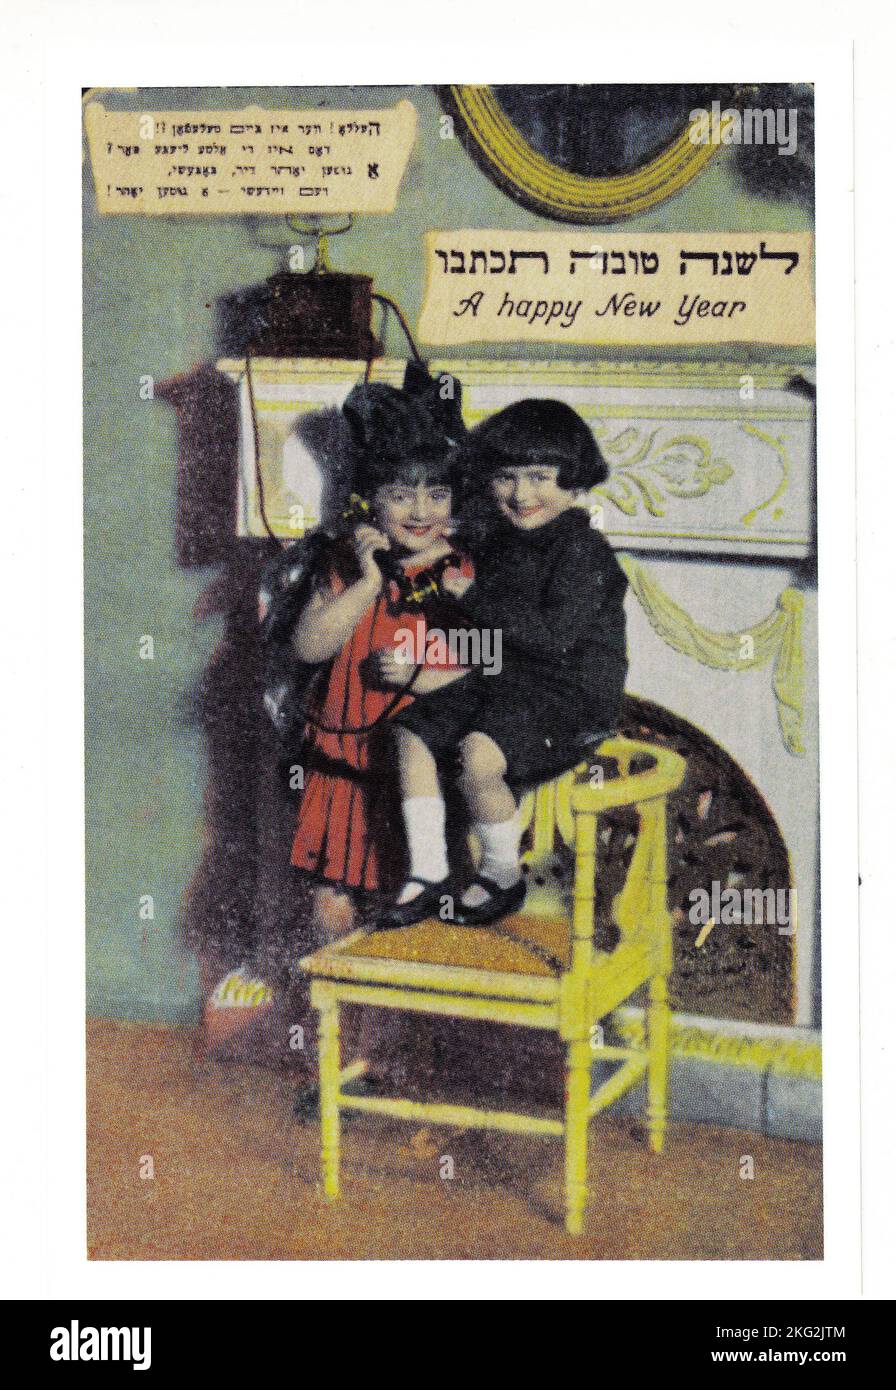 Eine jüdische Neujahrskarte aus dem frühen 20.. Jahrhundert, die hauptsächlich auf Jiddisch, aber auch mit hebräischer und englischer Schrift verfasst wurde. Es zeigt zwei kleine Kinder, die ihre Grüße auf einem altmodischen Telefon ausdehnen, eine relativ neue Erfindung für das Haus. Stockfoto